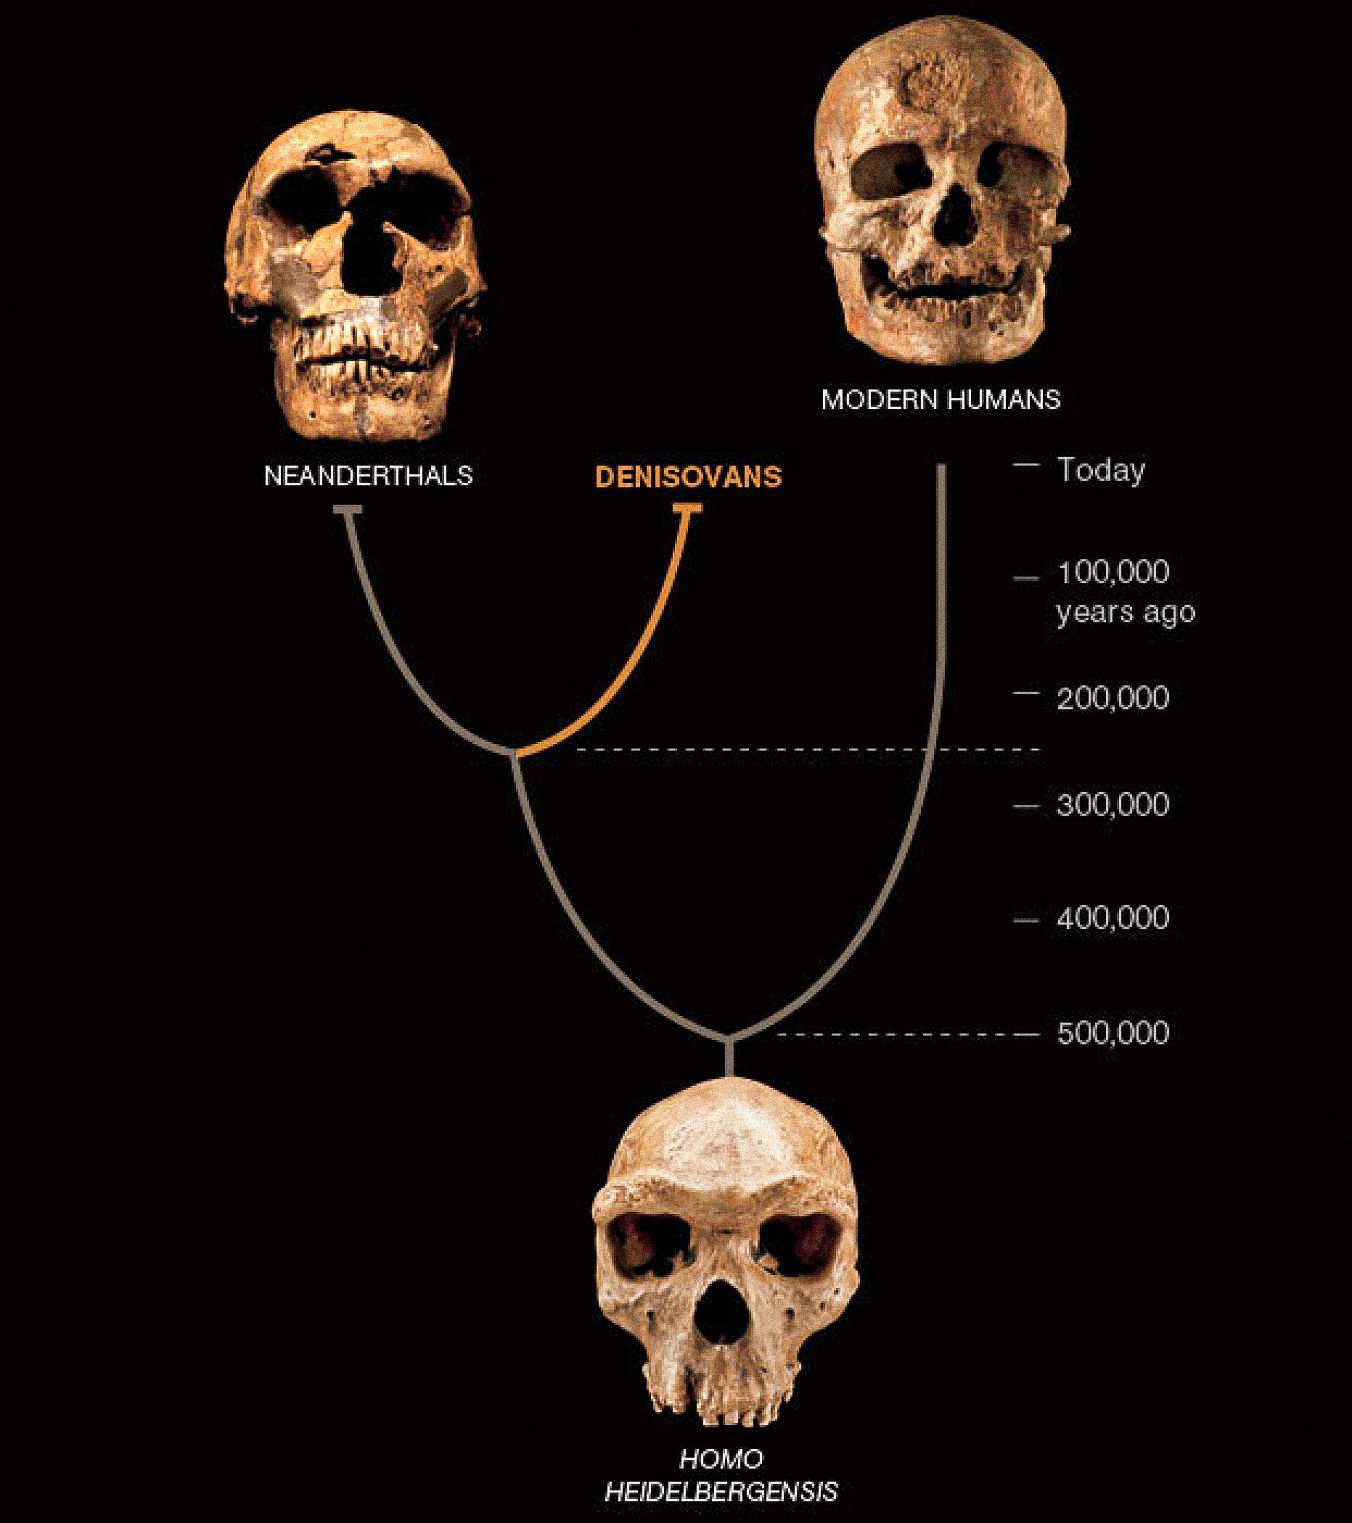 Jenis katilu manusa, disebut Denisovans, sigana geus coexisted di Asia jeung Neanderthal jeung manusa modern mimiti. Dua dimungkinkeun dipikawanoh tina fosil loba pisan jeung artefak. Denisovans didefinisikeun sajauh ieu ngan ku DNA tina hiji chip tulang sareng dua huntu-tapi ngungkabkeun pulas anyar pikeun carita manusa.